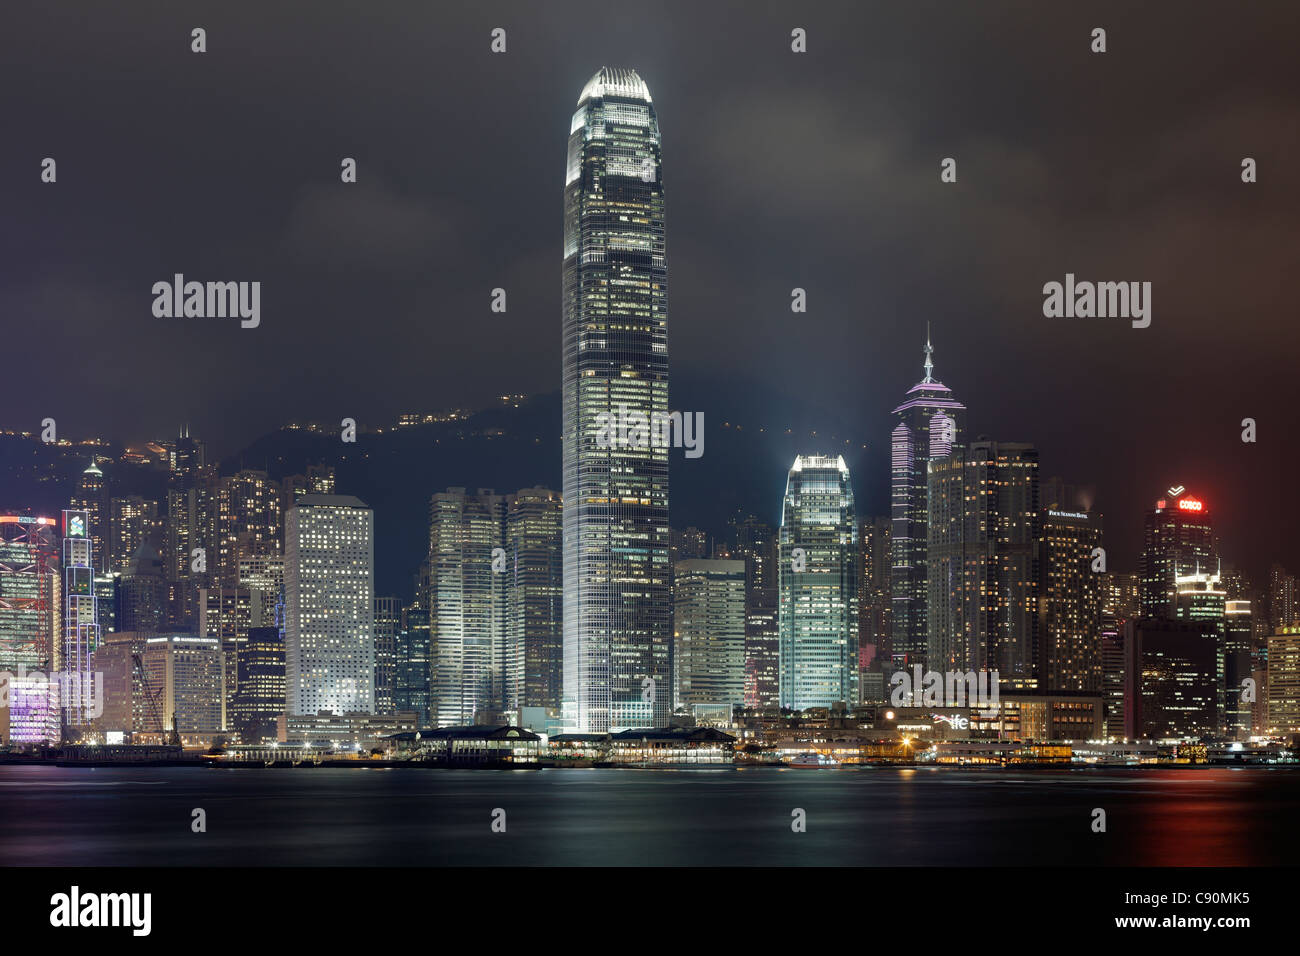 Hong Kong Skyline with Two International Finance Center at night, Hong Kong, China Stock Photo